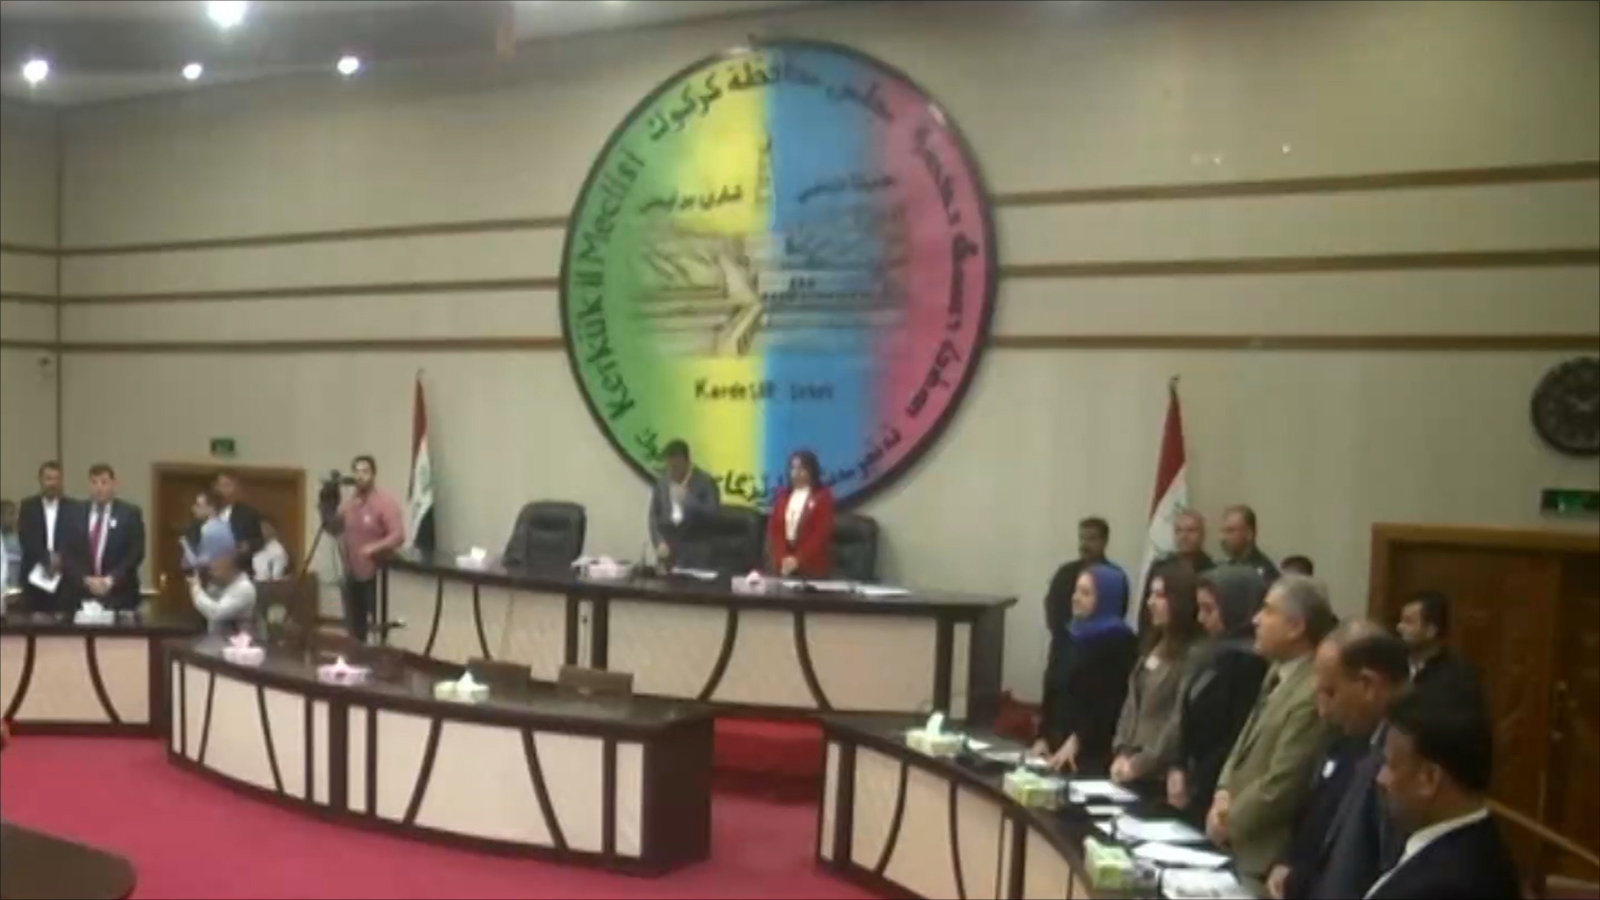 ‪‬ البرلمان العراقي رفض في وقت سابق رفع مجلس محافظة كركوك علم كردستان